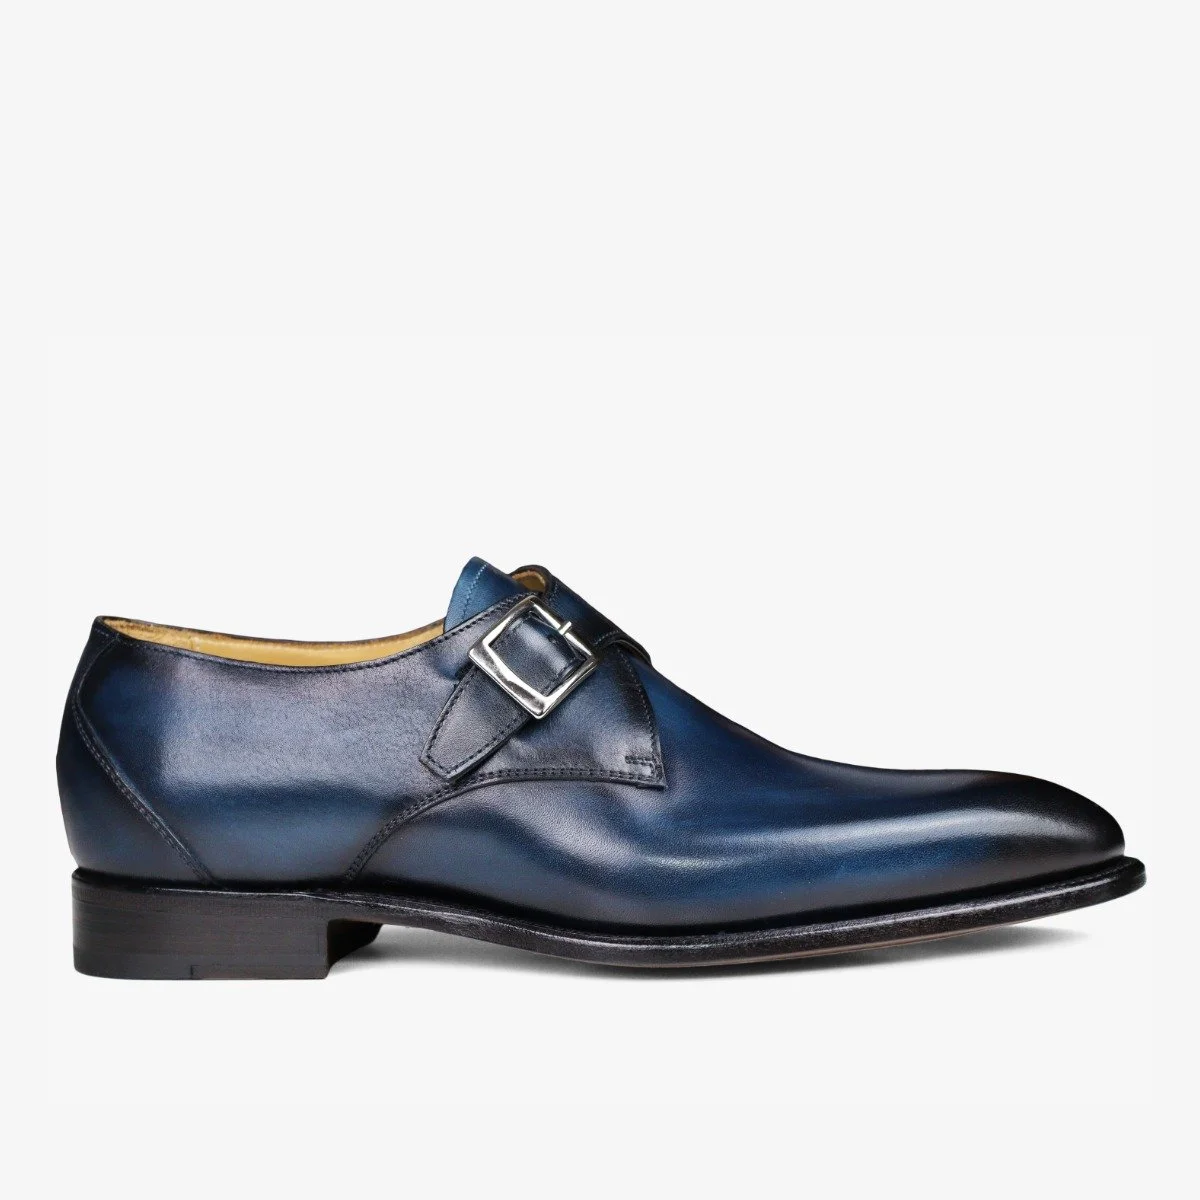 Carlos Santos 6307 Gareth blue men's monk strap shoes